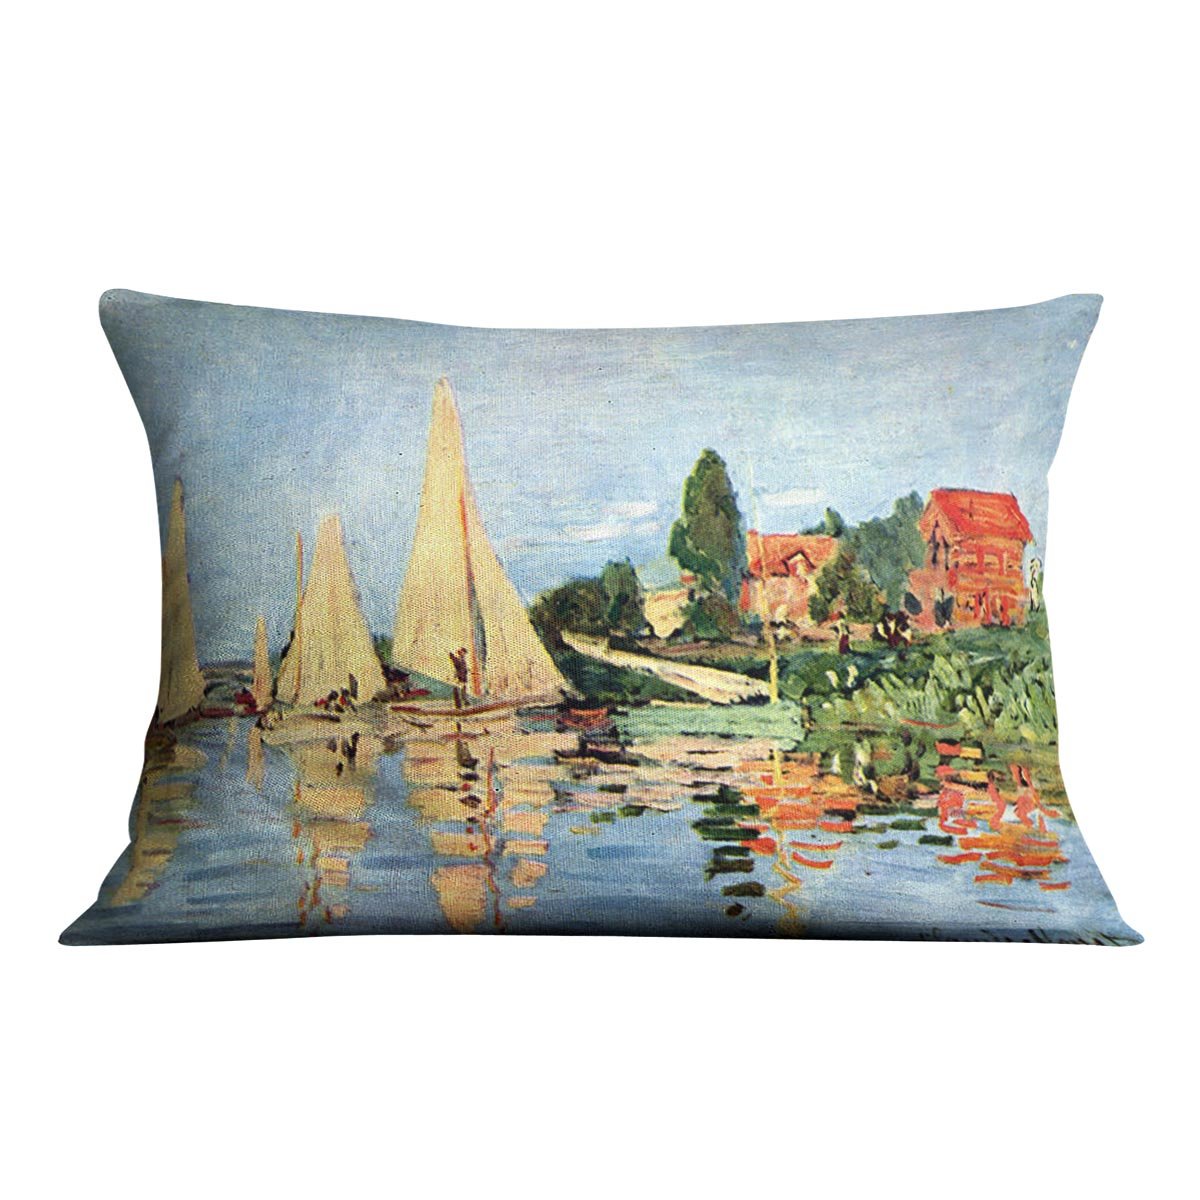 Regatta at Argenteuil by Monet Throw Pillow